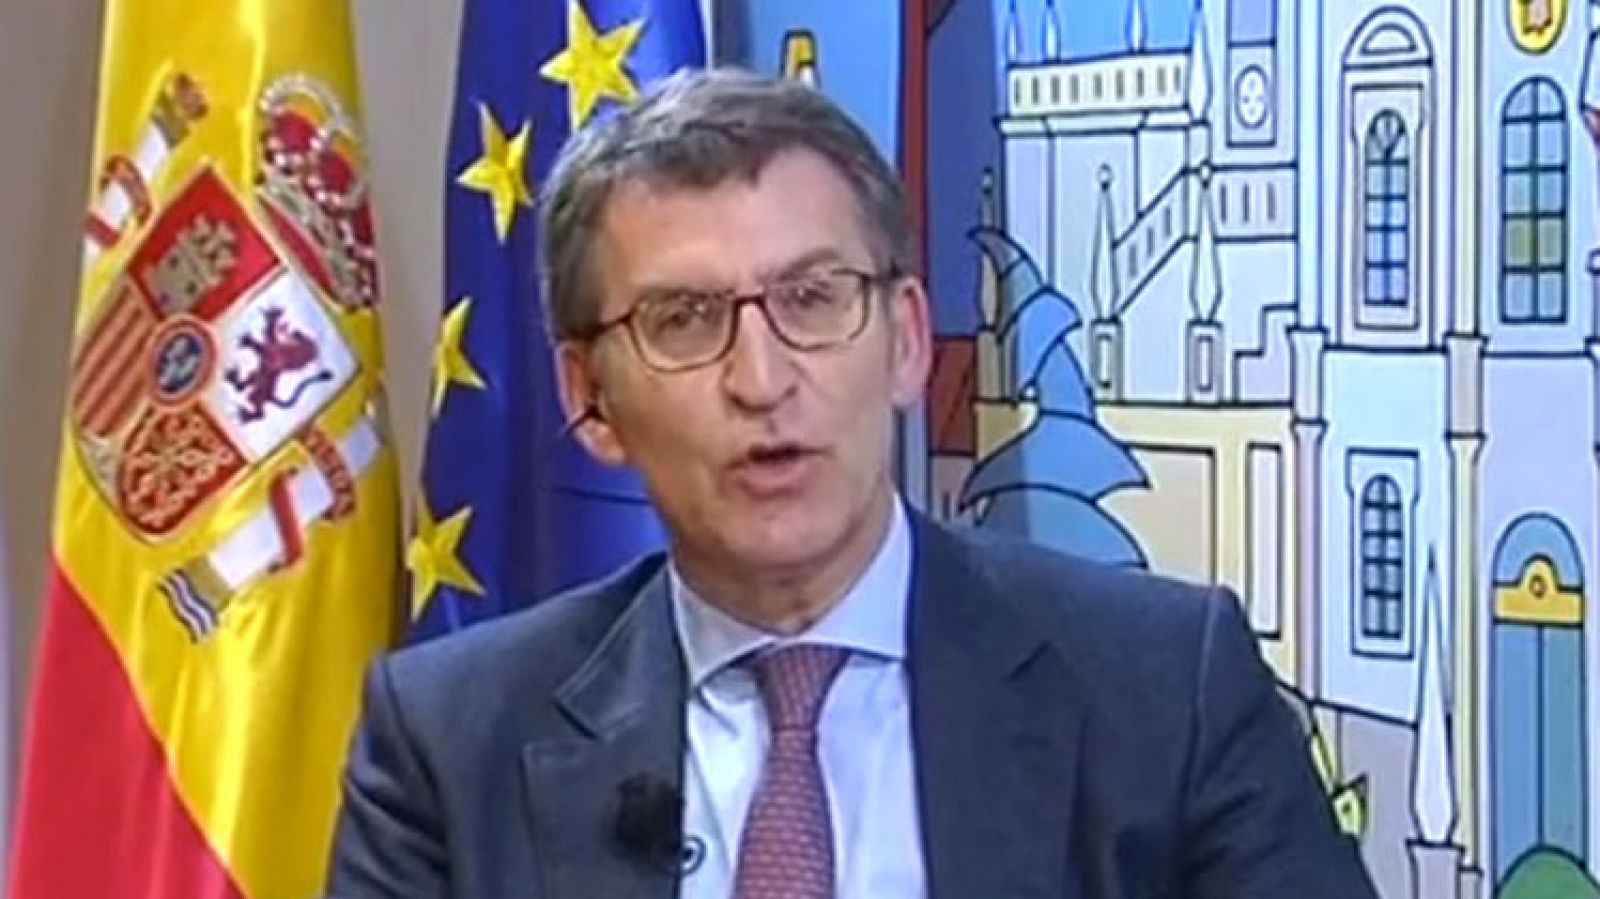 Feijóo considera fundamental para el PP obtener de nuevo la mayoría absoluta en Galicia - RTVE.es